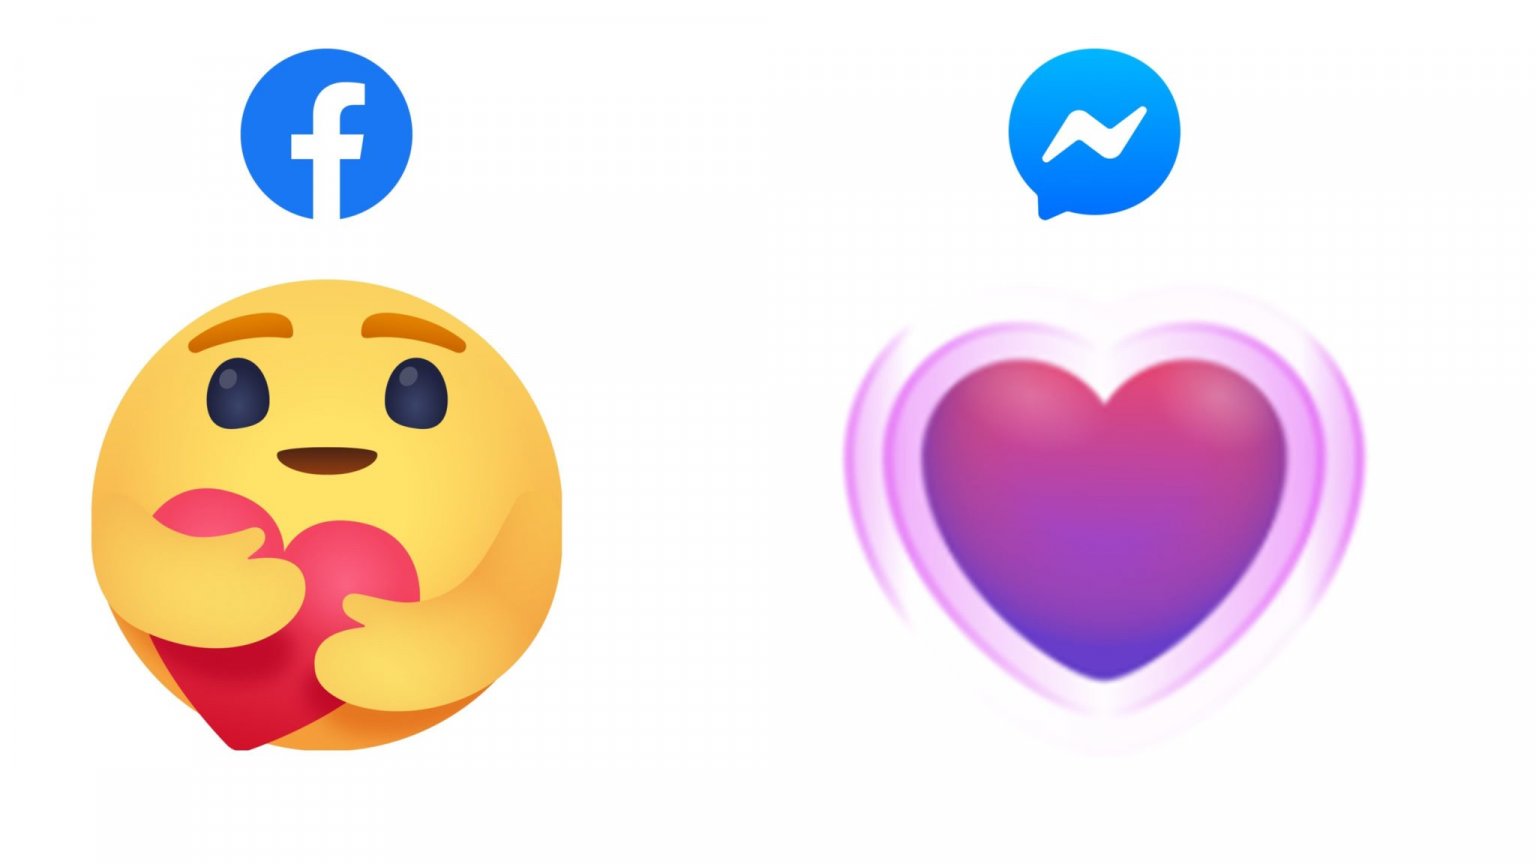 Séparés, mais ensemble : Facebook devient plus empathique avec un nouvel emoji réaction "solidaire"